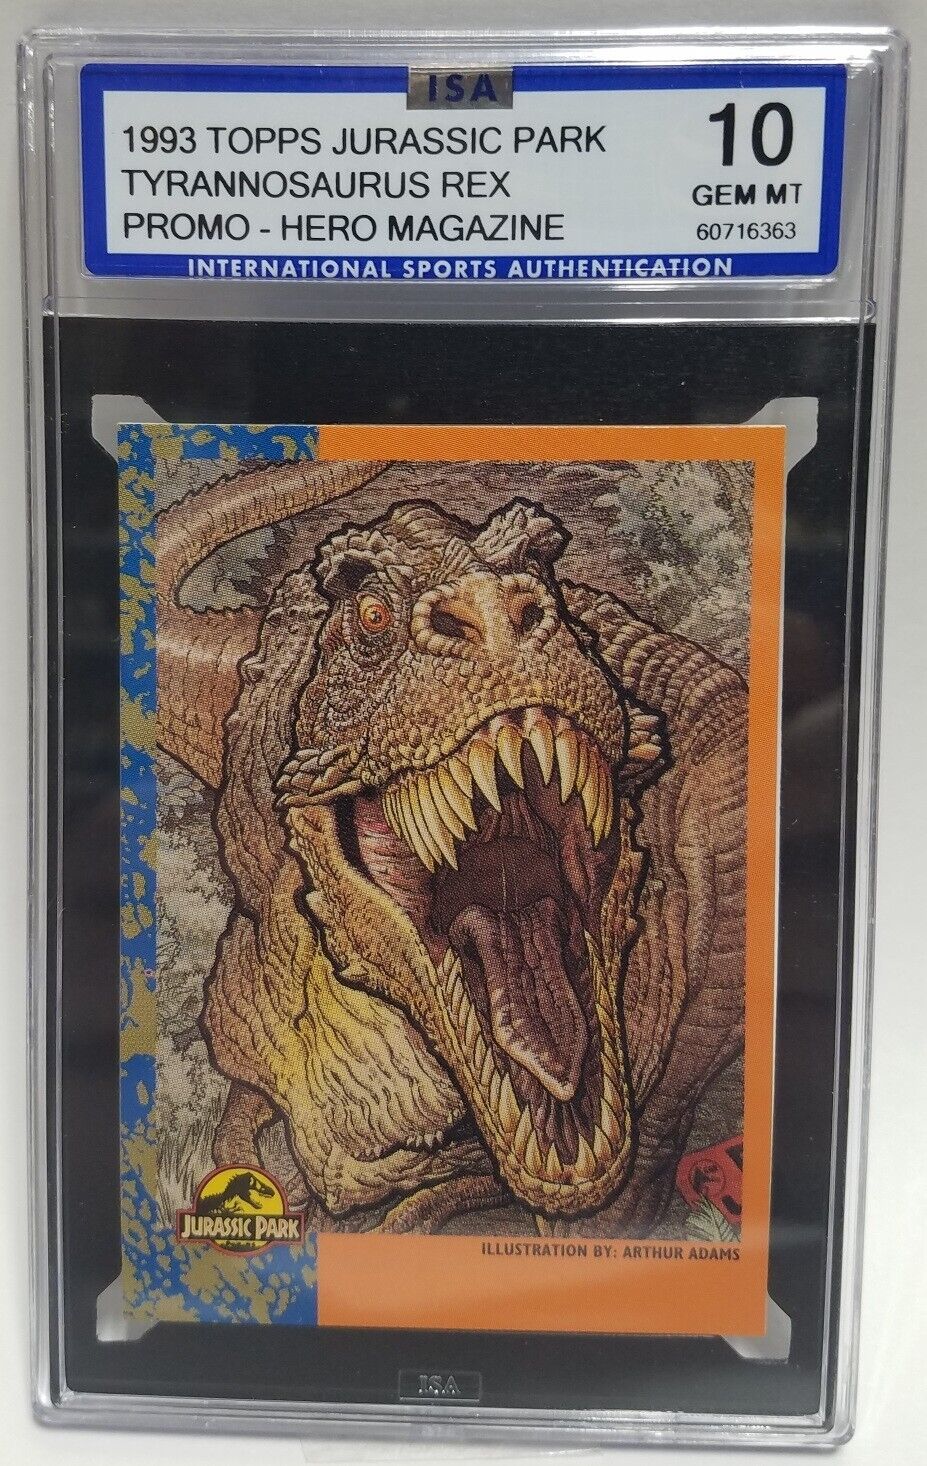 Jurassic Park 1993 Topps Tyrannosaurus Rex Promo - Hero Magazine ISA 10 Grade